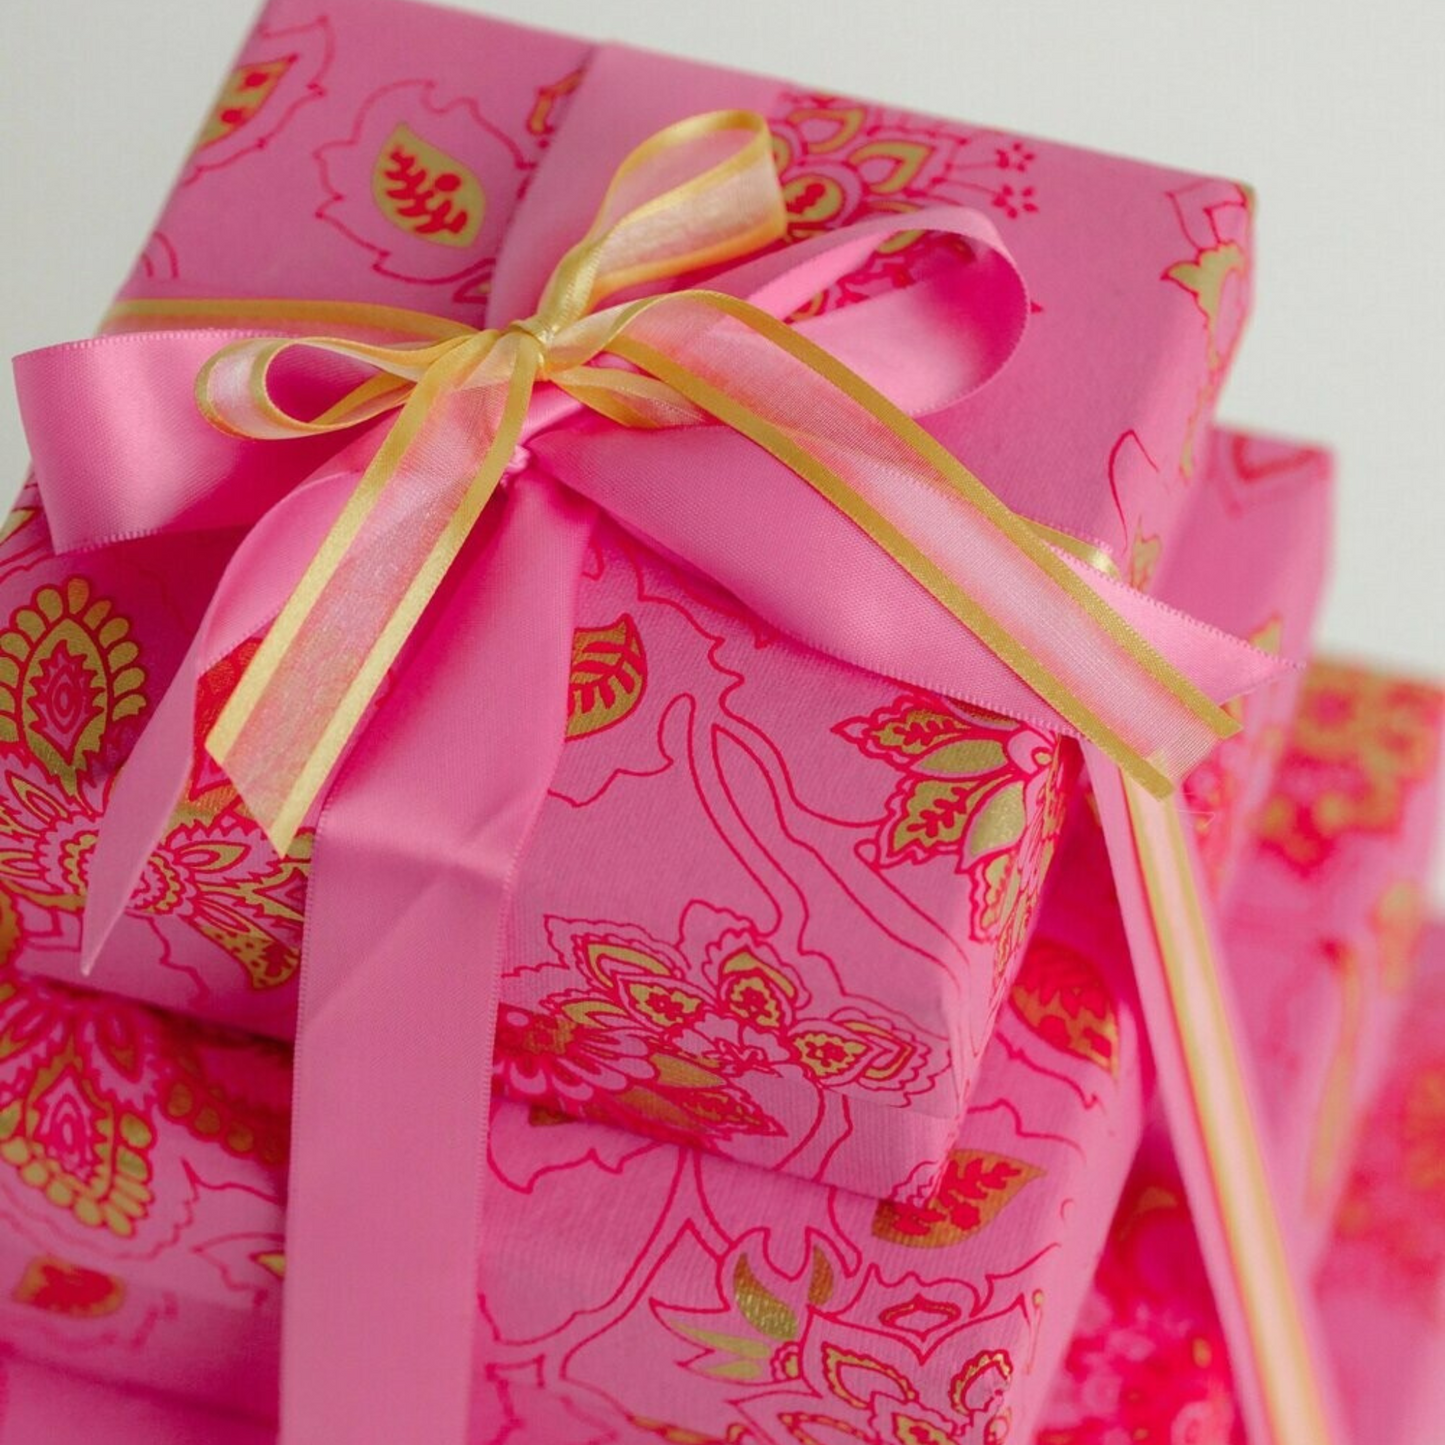 Hot Pink sqaure gift box